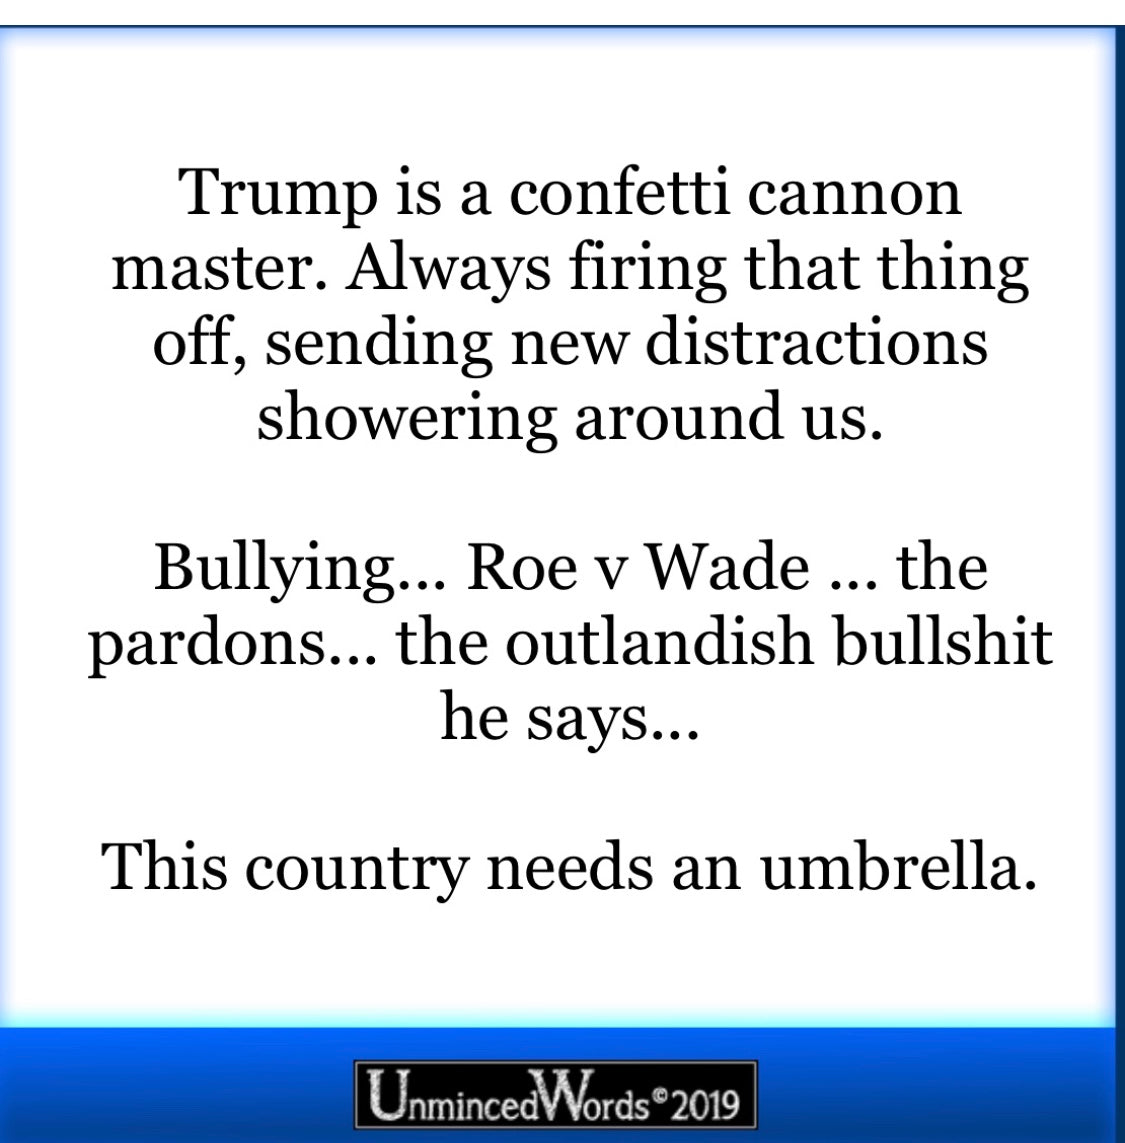 Trump is a confetti cannon master.